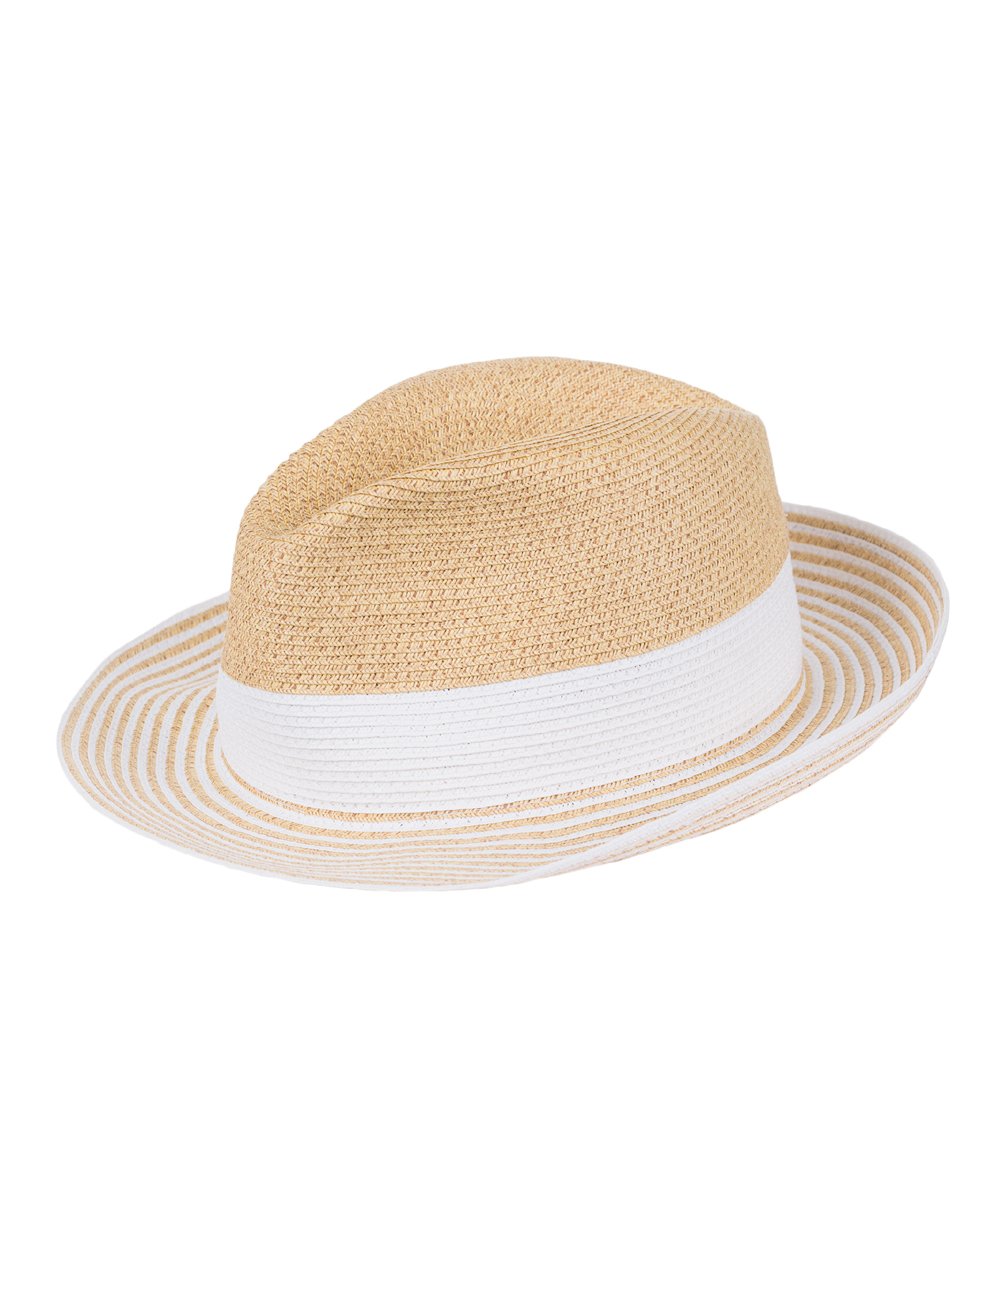 CAPO Damen Capri HAT Sonnenhut, Weiß (Polar White 10), Small (Herstellergröße: 56)